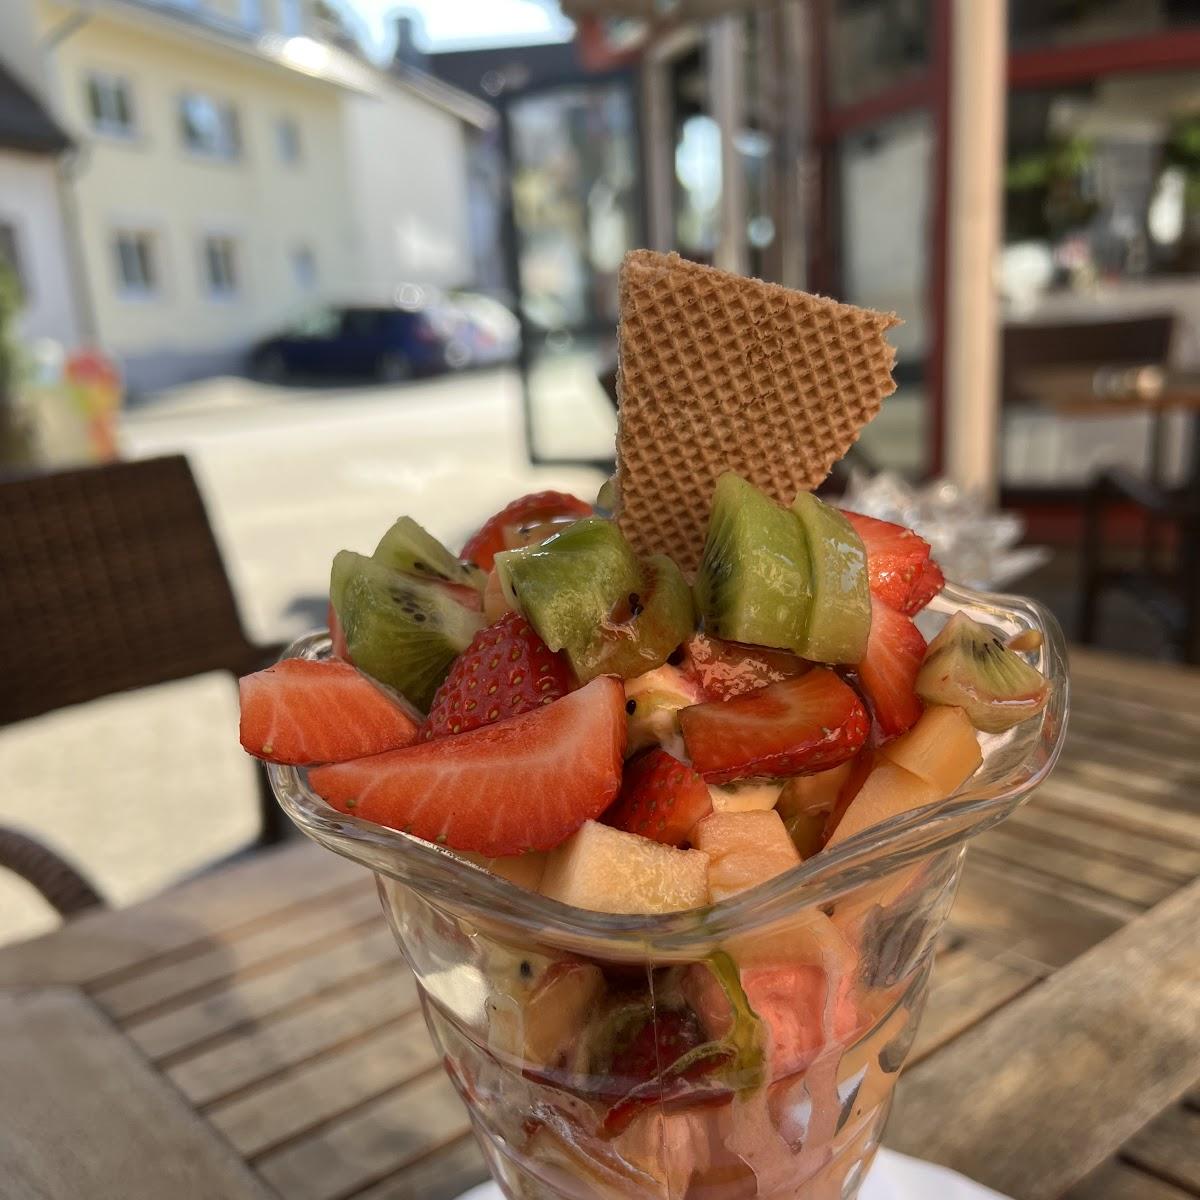 Restaurant "Eiskaffee" in Schliengen